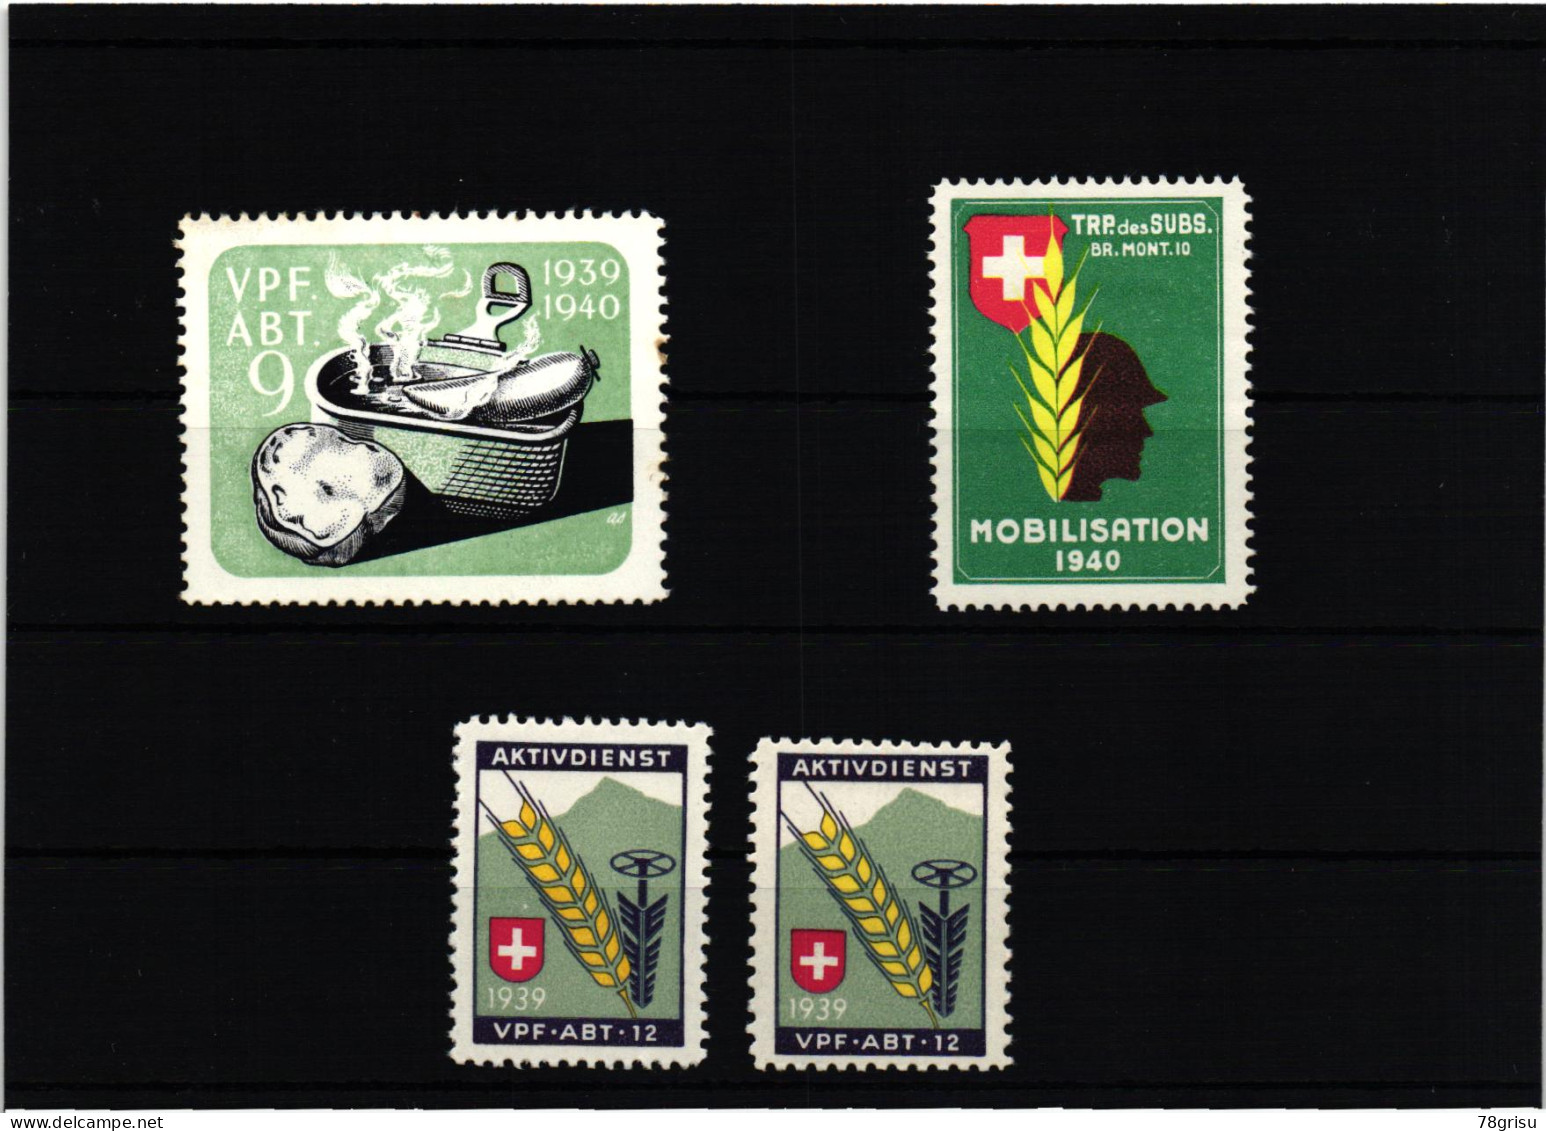 Schweiz Soldatenmarken, Vpf.Abt. Verpflegungs Abteilung 1939 1940 TRP. Des SUBS.  - Viñetas